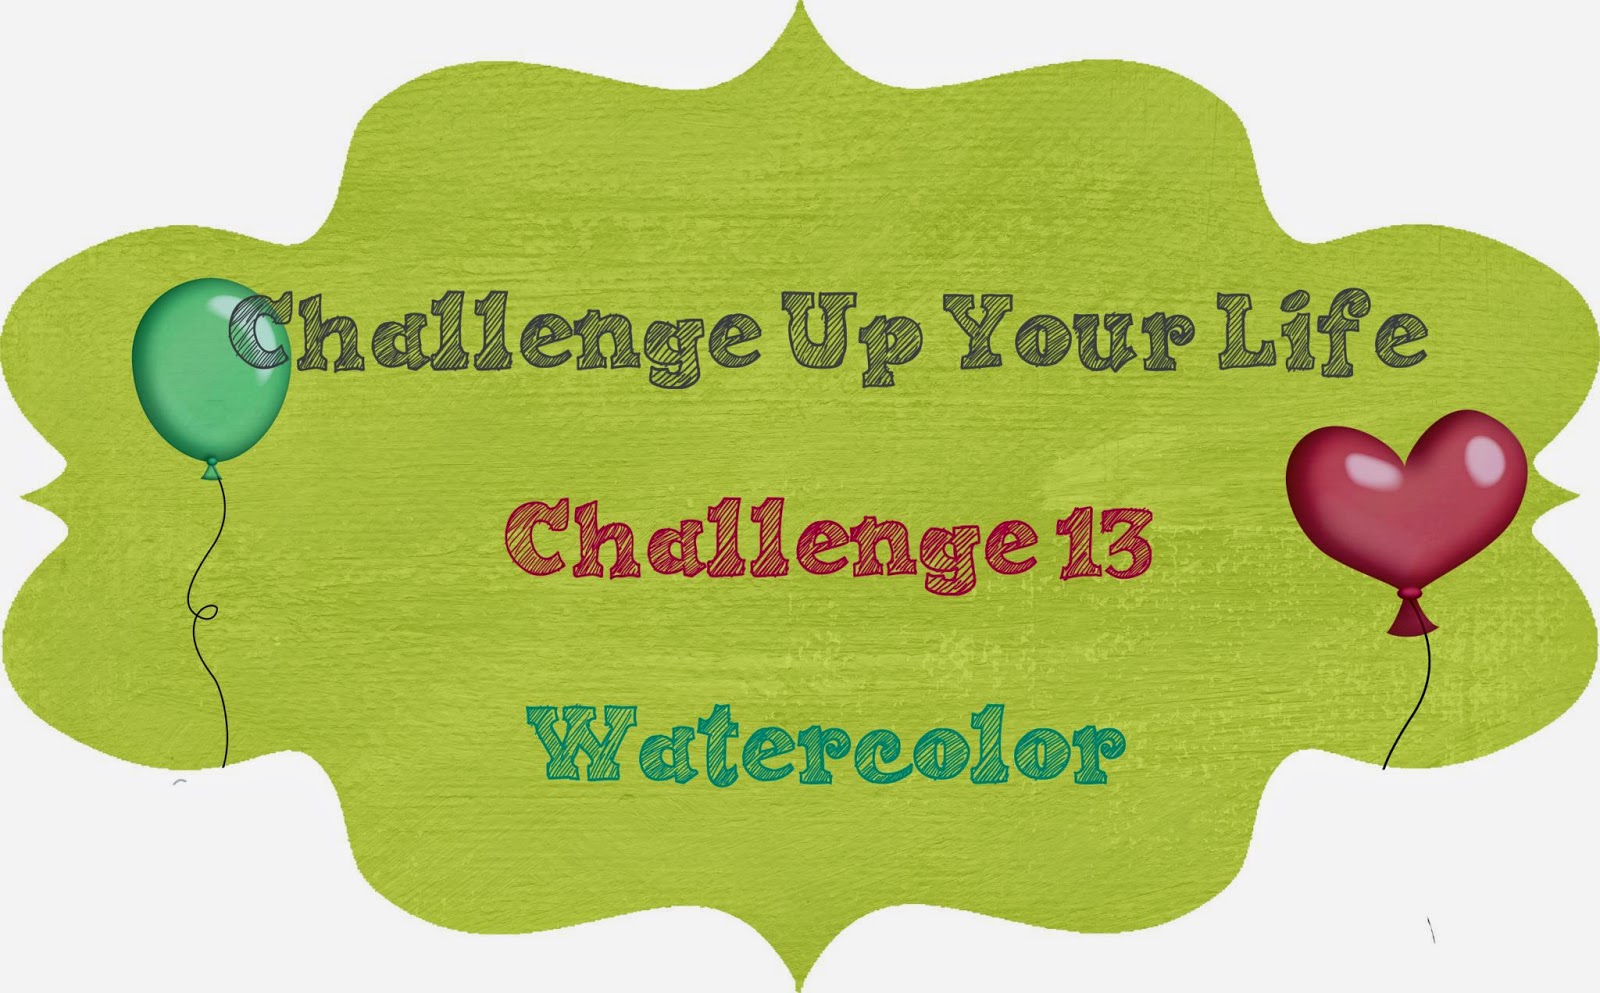 http://challengeupyourlife.blogspot.com